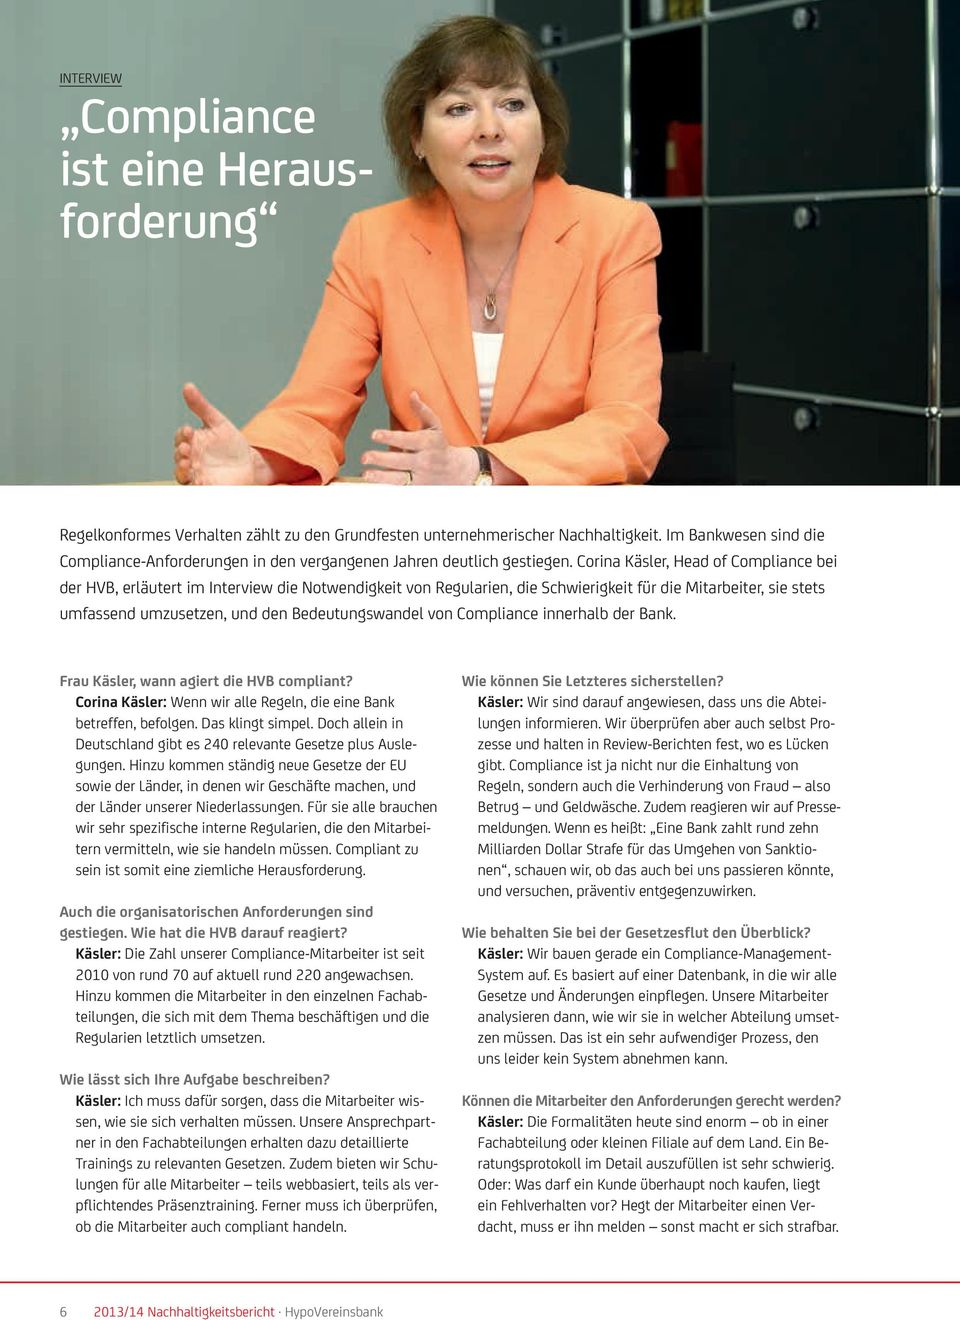 Corina Käsler, Head of Compliance bei der HVB, erläutert im Interview die Notwendigkeit von Regularien, die Schwierigkeit für die Mitarbeiter, sie stets umfassend umzusetzen, und den Bedeutungswandel